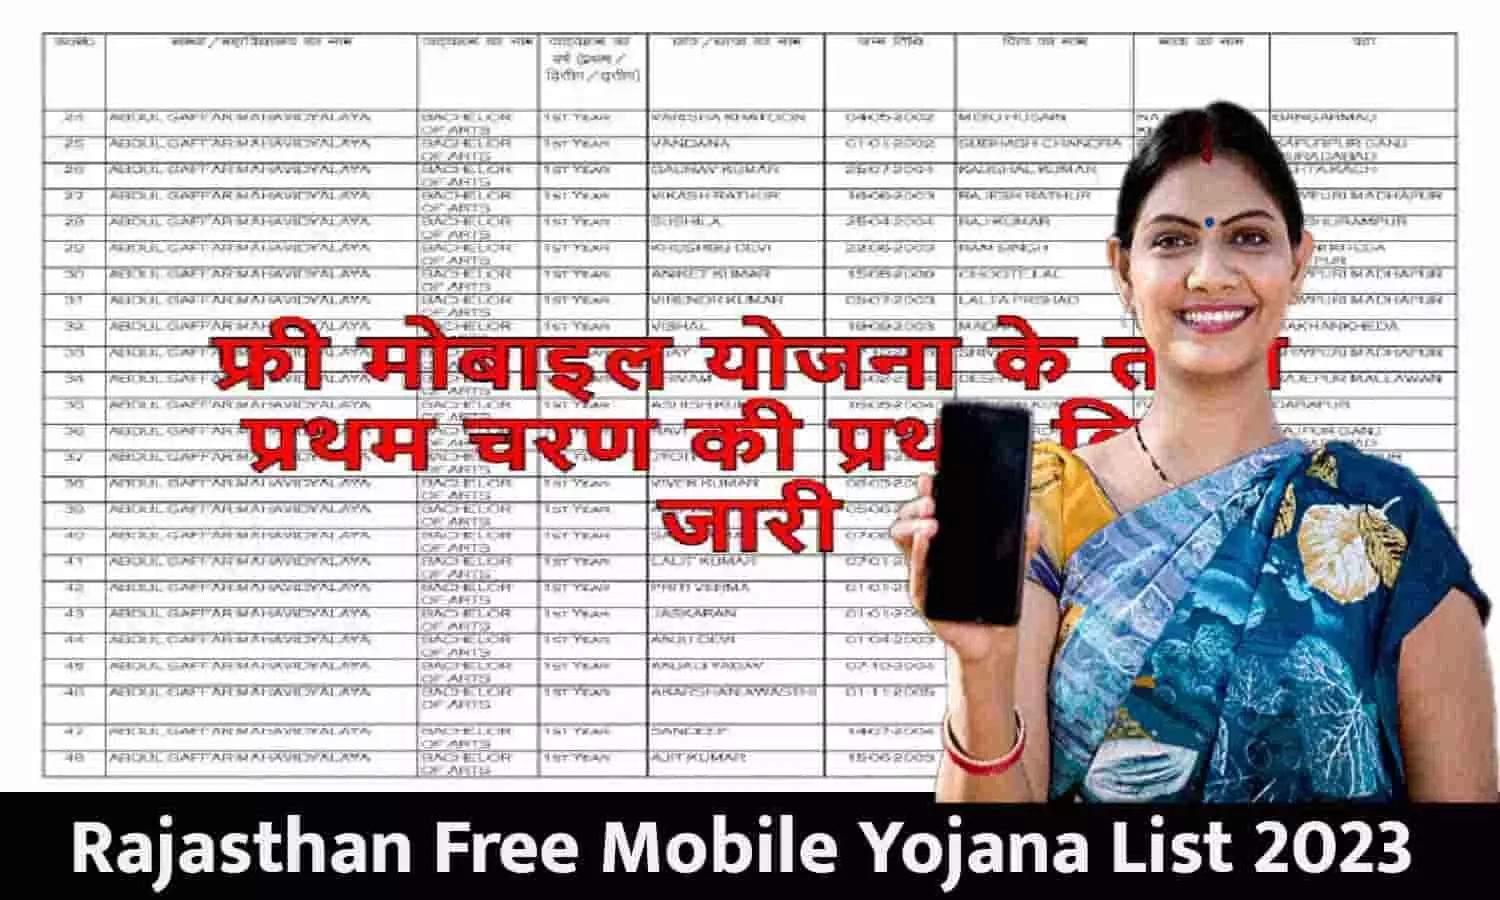 Free Mobile Yojana List 2023: बाद ऐलान! जुलाई में इन महिलाओ को फ्री मोबाइल के साथ 3 साल तक मिलेगा Free Internet मिलेगा, फटाफट जारी हुई लिस्ट देखे अपना नाम...